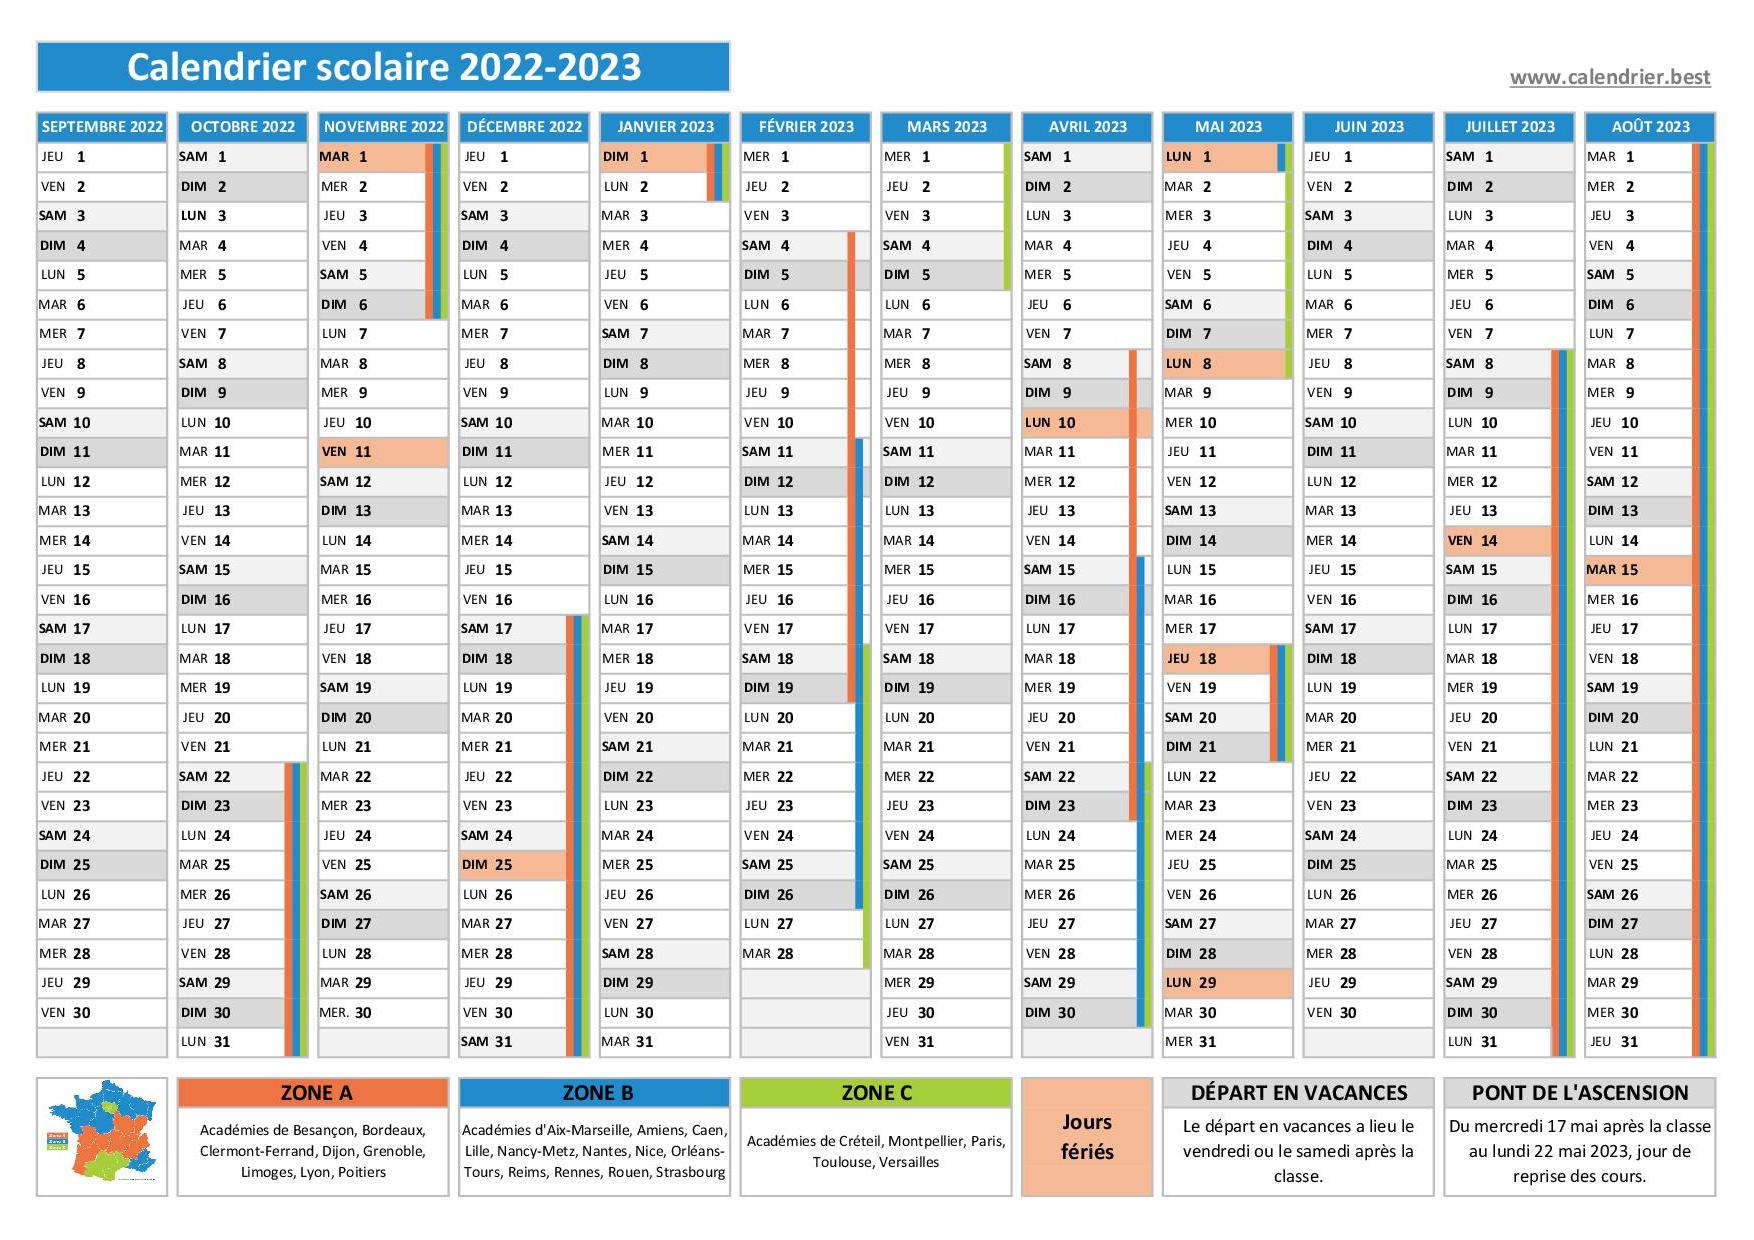 Dates des vacances scolaires 2022-2023 - Calendrier scolaire 2022-2023  officiel